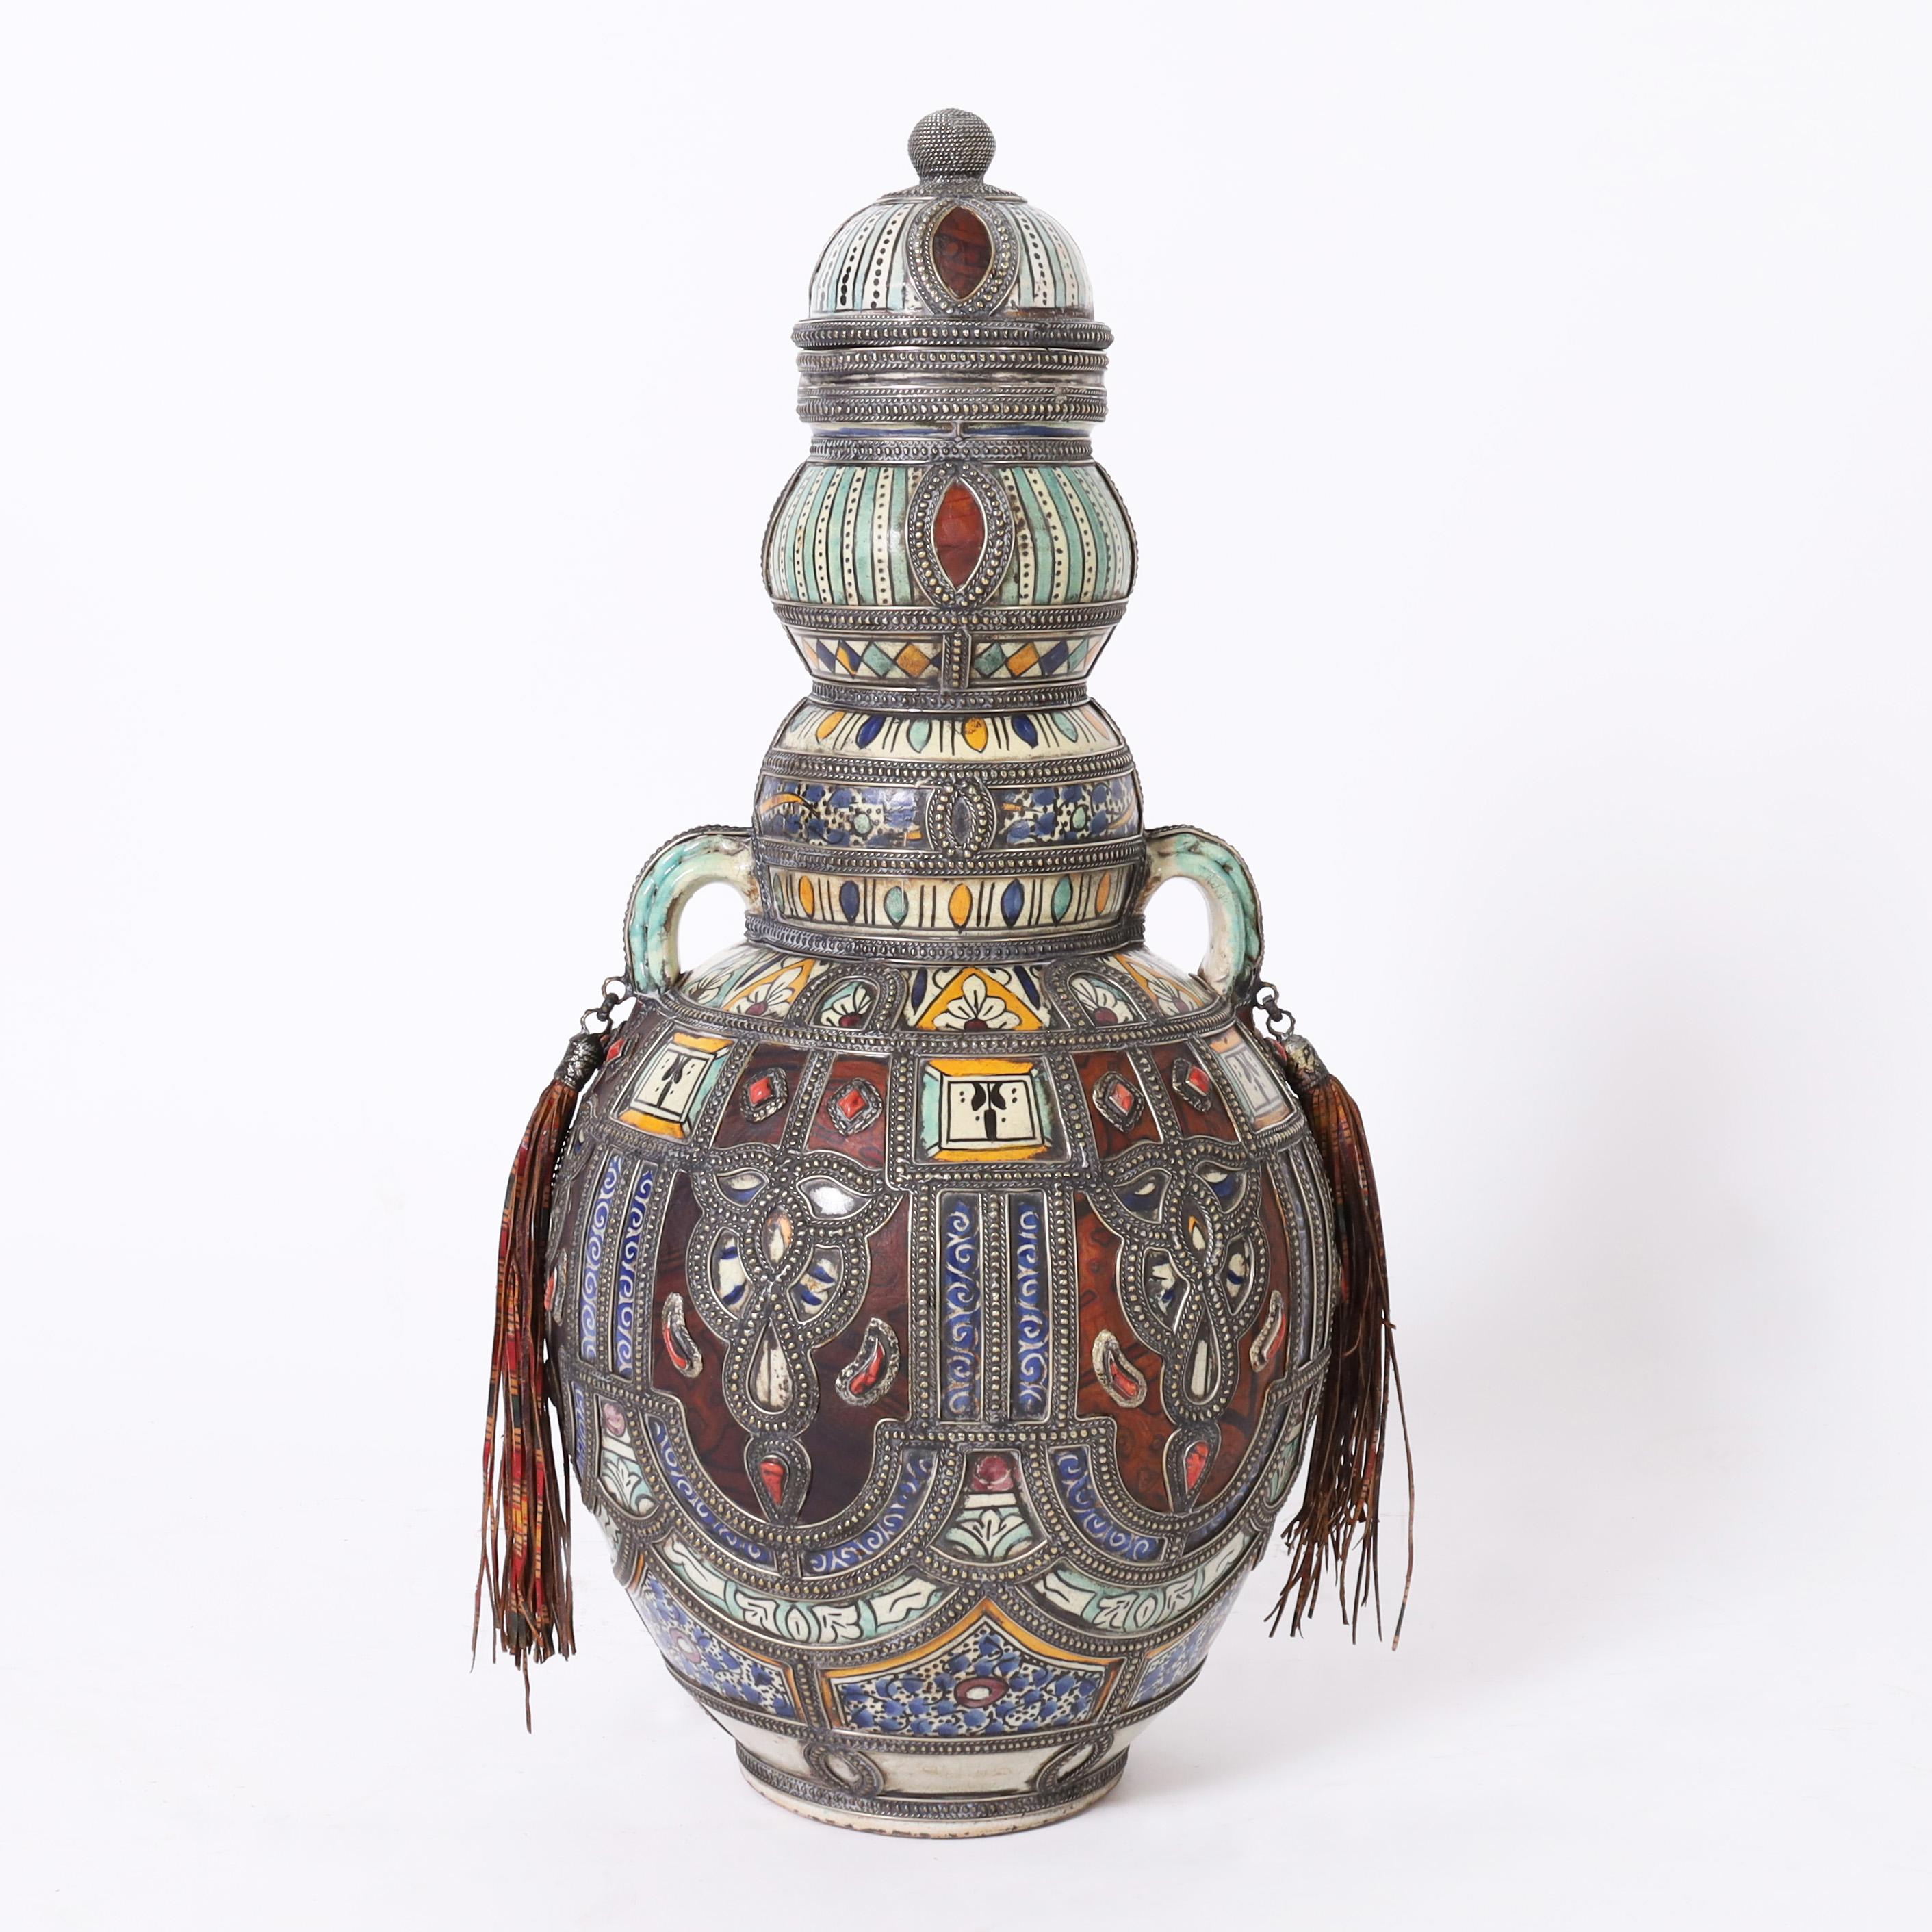 Impressionnante paire vintage d'urnes marocaines à couvercle en terre cuite décorée et émaillée dans une couleur méditerranéenne distinctive, présentant un travail de bijouterie en métal artisanal avec des pierres semi-précieuses, des panneaux de